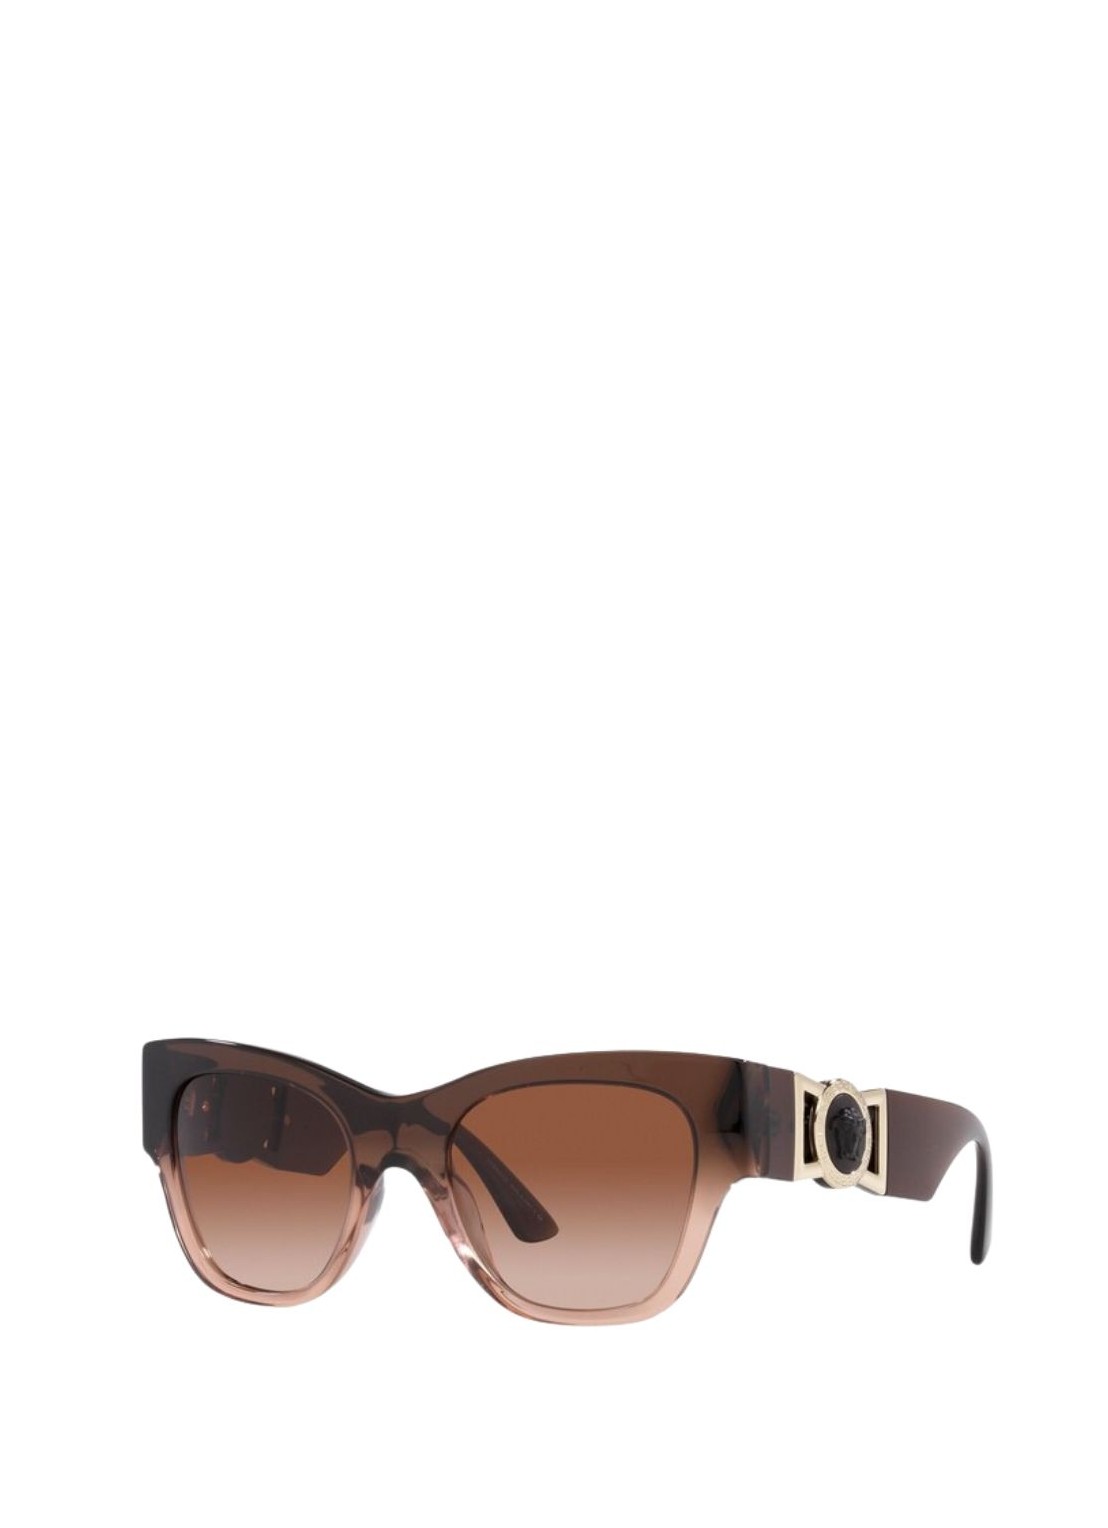 Gafas versace sunglasses woman 0ve4415u 0ve4415u 533213 talla transparente
 